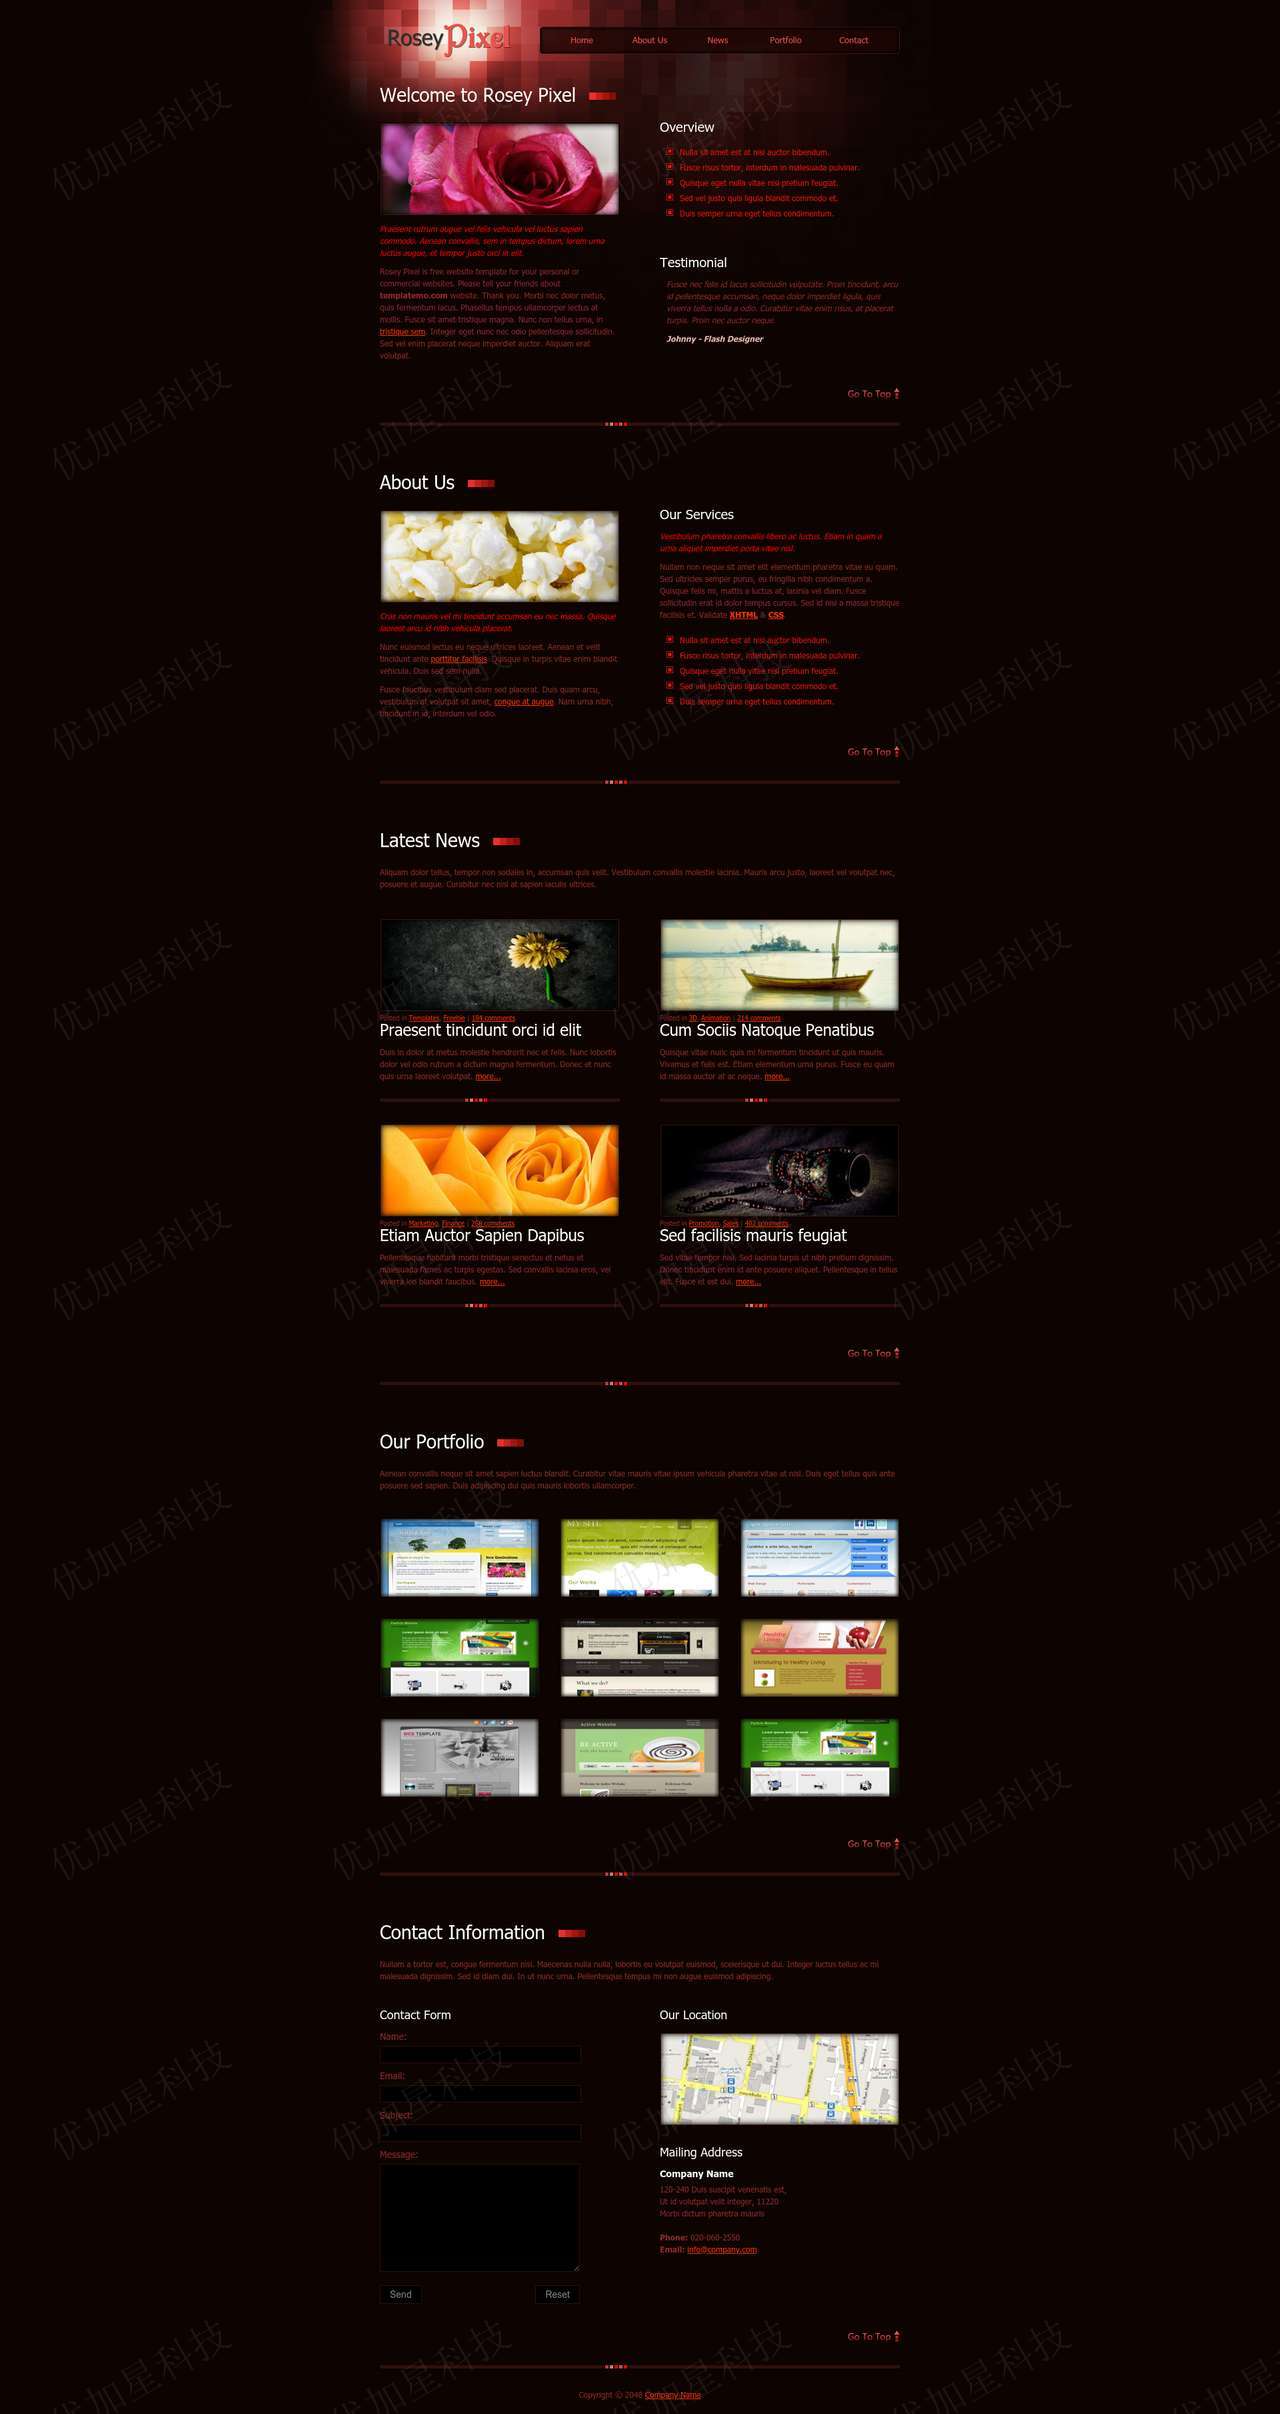 红色视觉效果玫瑰花朵浪漫风主题作品展示个人博客网站模板_优加星网络科技